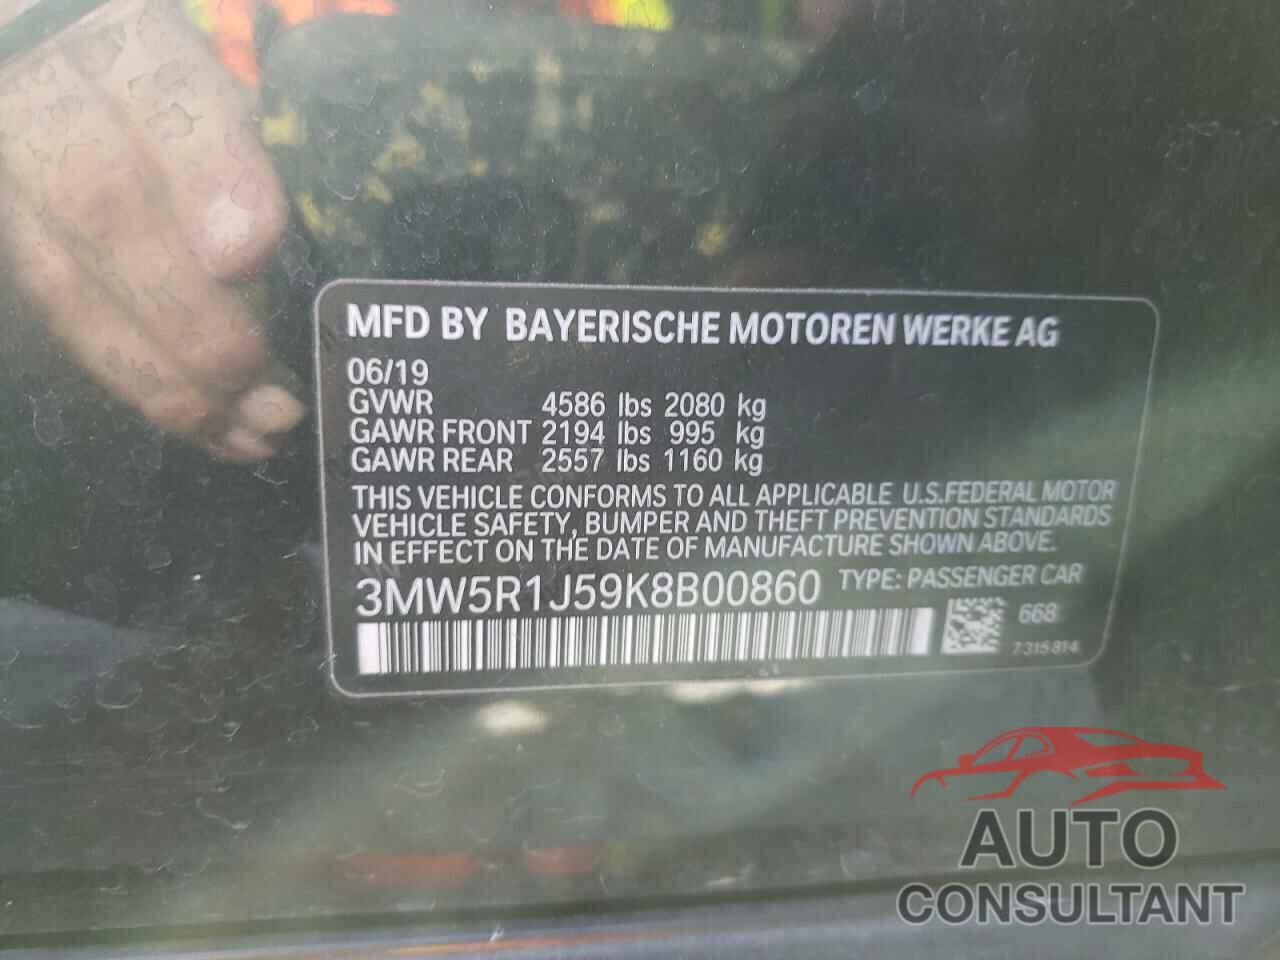 BMW 3 SERIES 2019 - 3MW5R1J59K8B00860